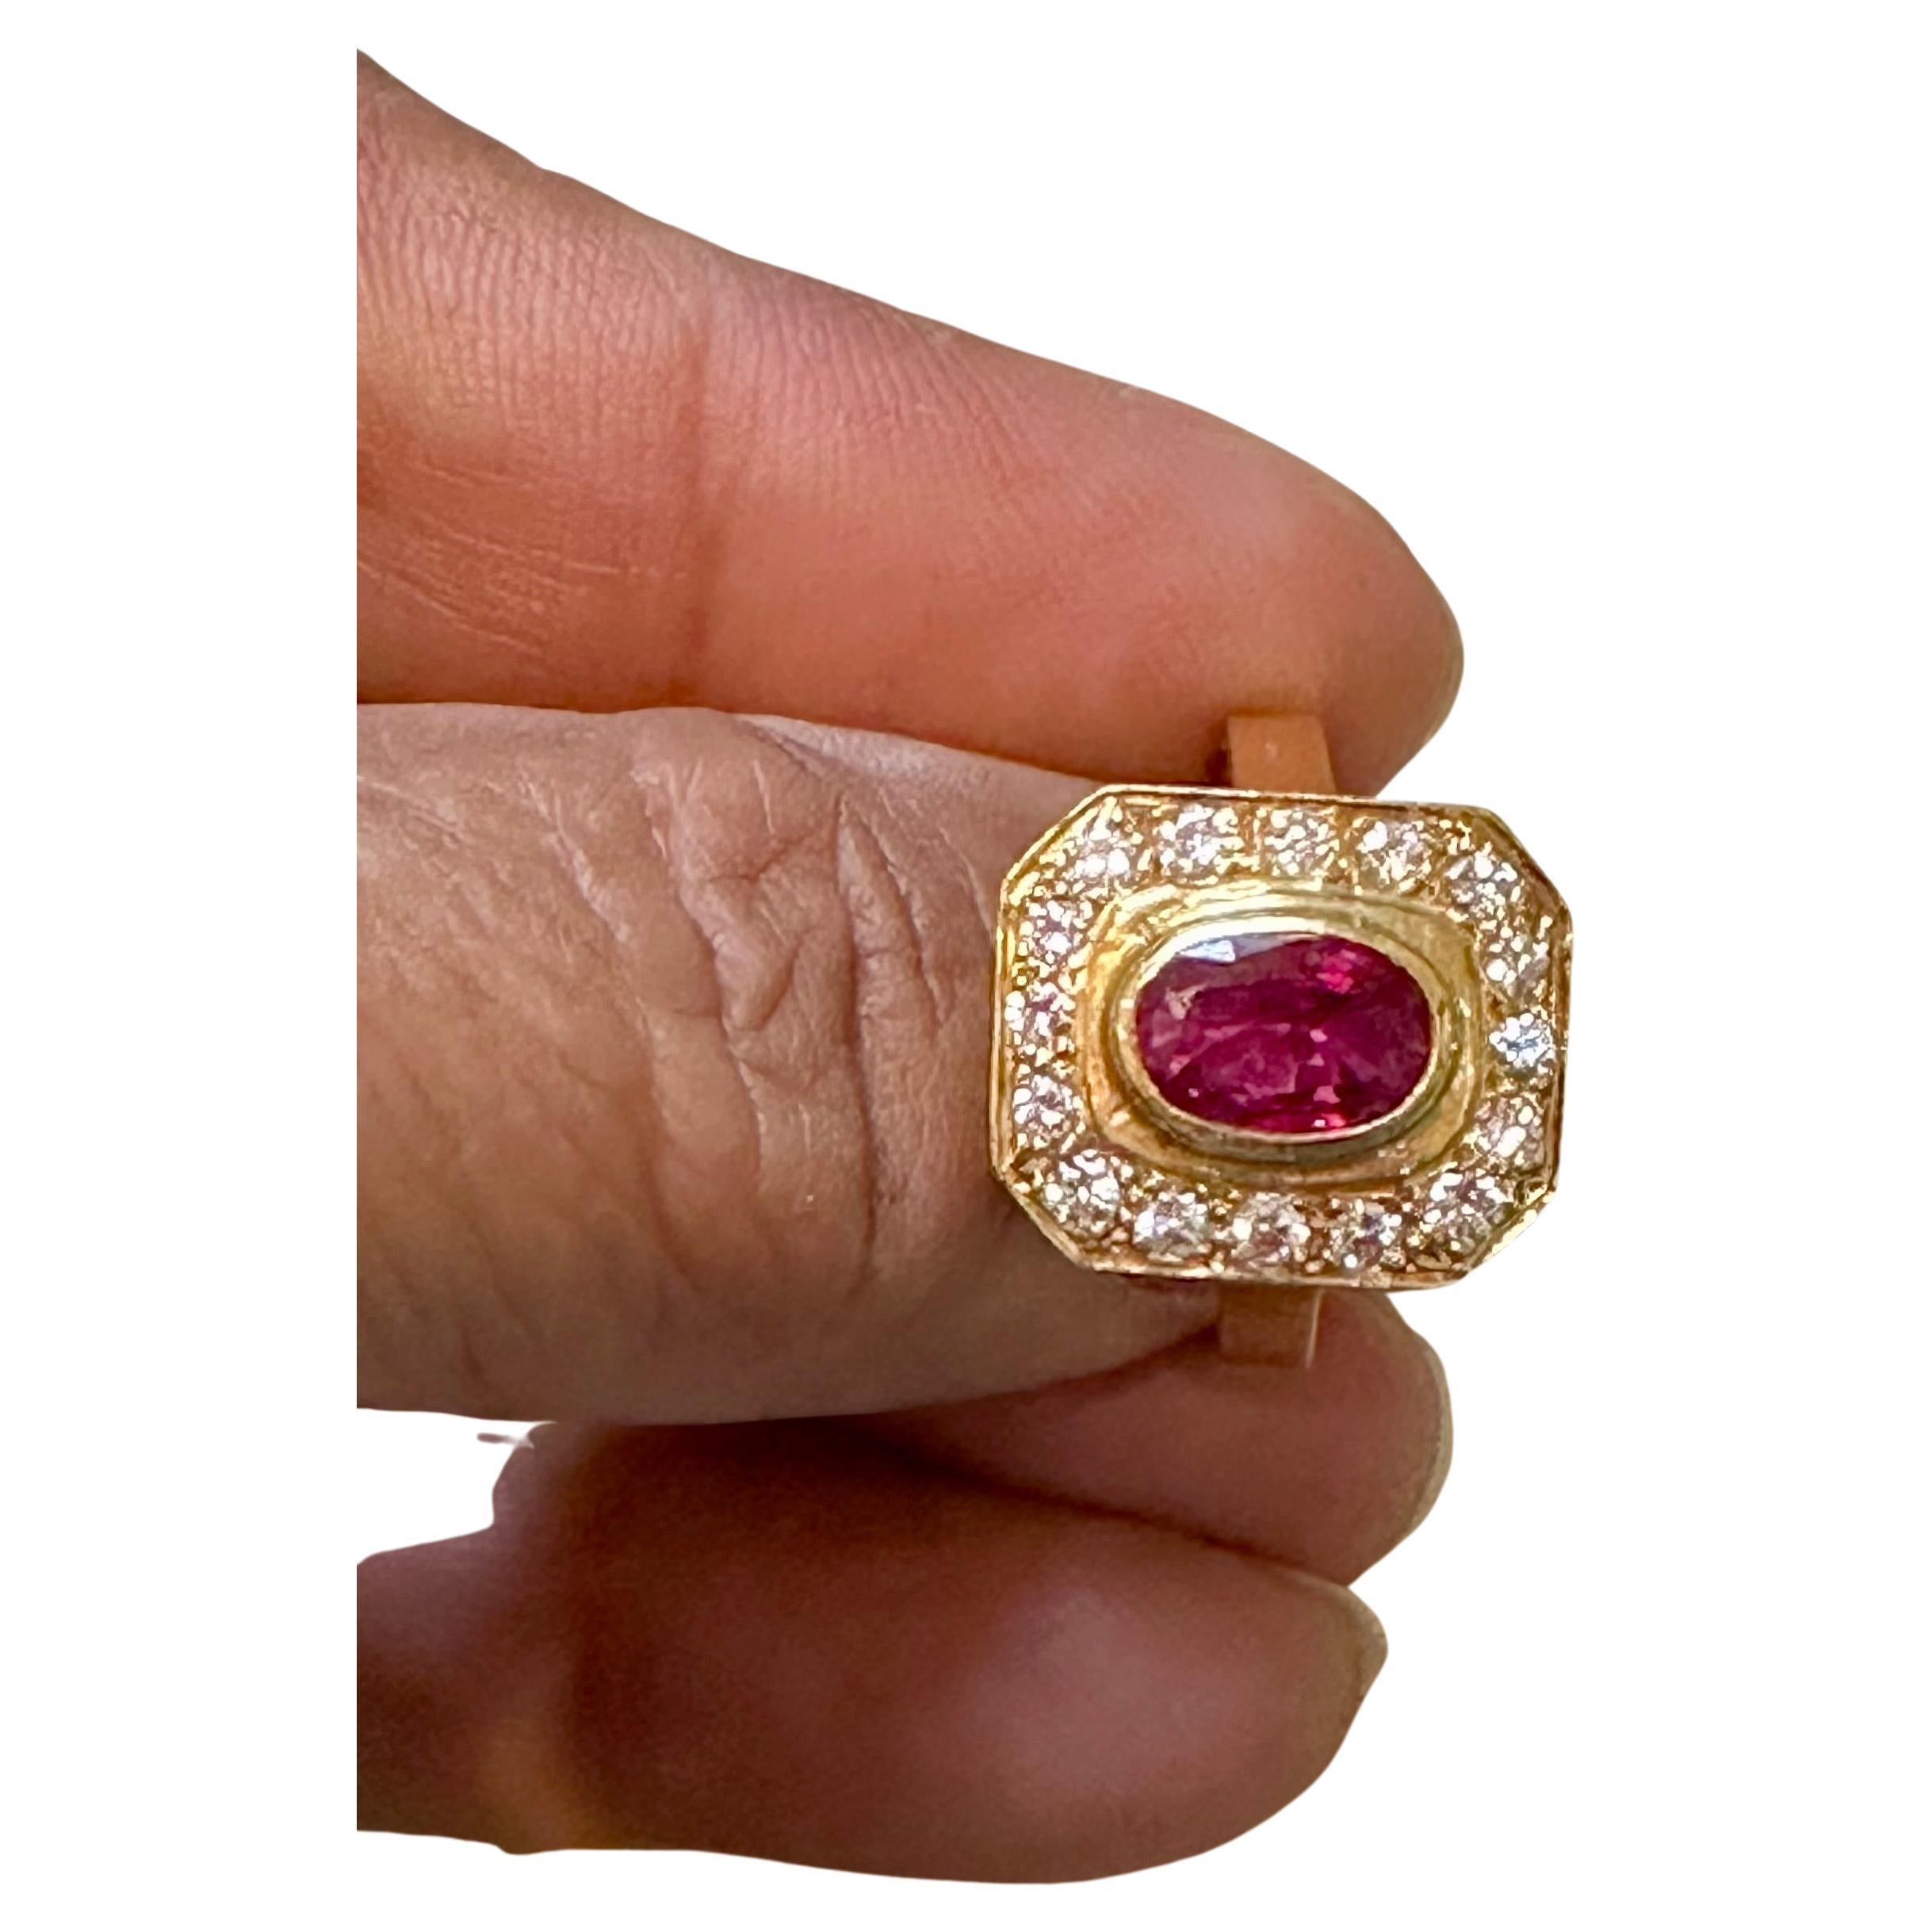 Wir präsentieren unseren exquisiten Ring aus 18 Karat Gold mit einem atemberaubenden ovalen Rubin von 1,4 Karat und runden Diamanten im Brillantschliff von etwa 0,80 Karat. Dieser Ring ist ein wahres Zeugnis für Schönheit und Eleganz.

Der